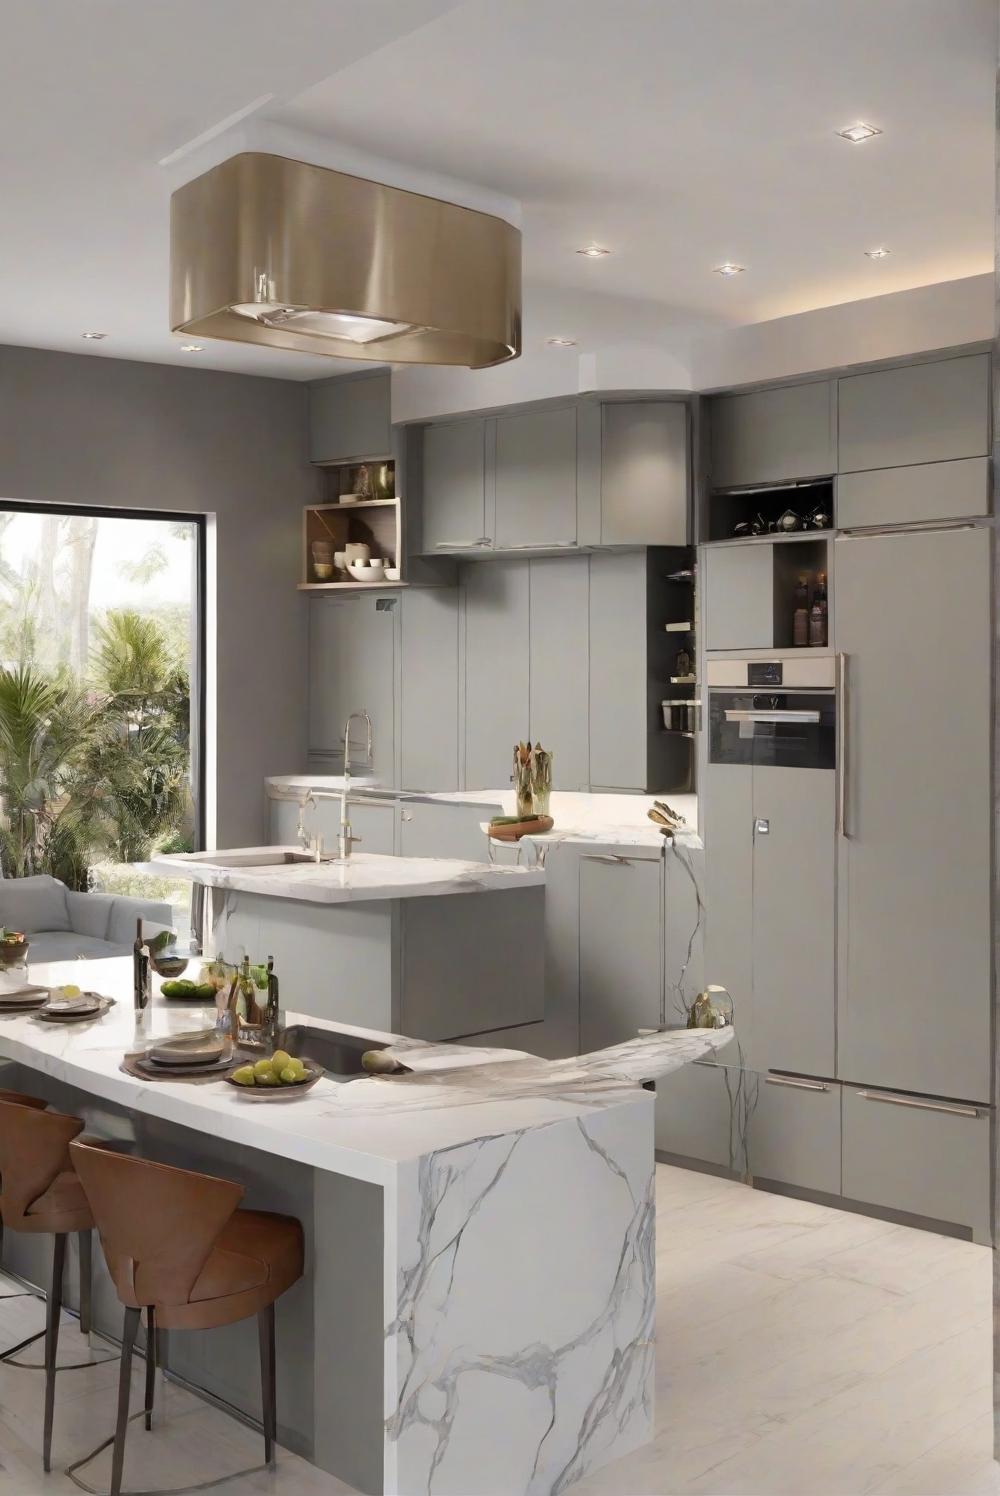 kitchen interior design,modern kitchen decor,contemporary kitchen design,smart kitchen technology,kitchen renovation ideas,luxury kitchen interiors,kitchen cabinet design